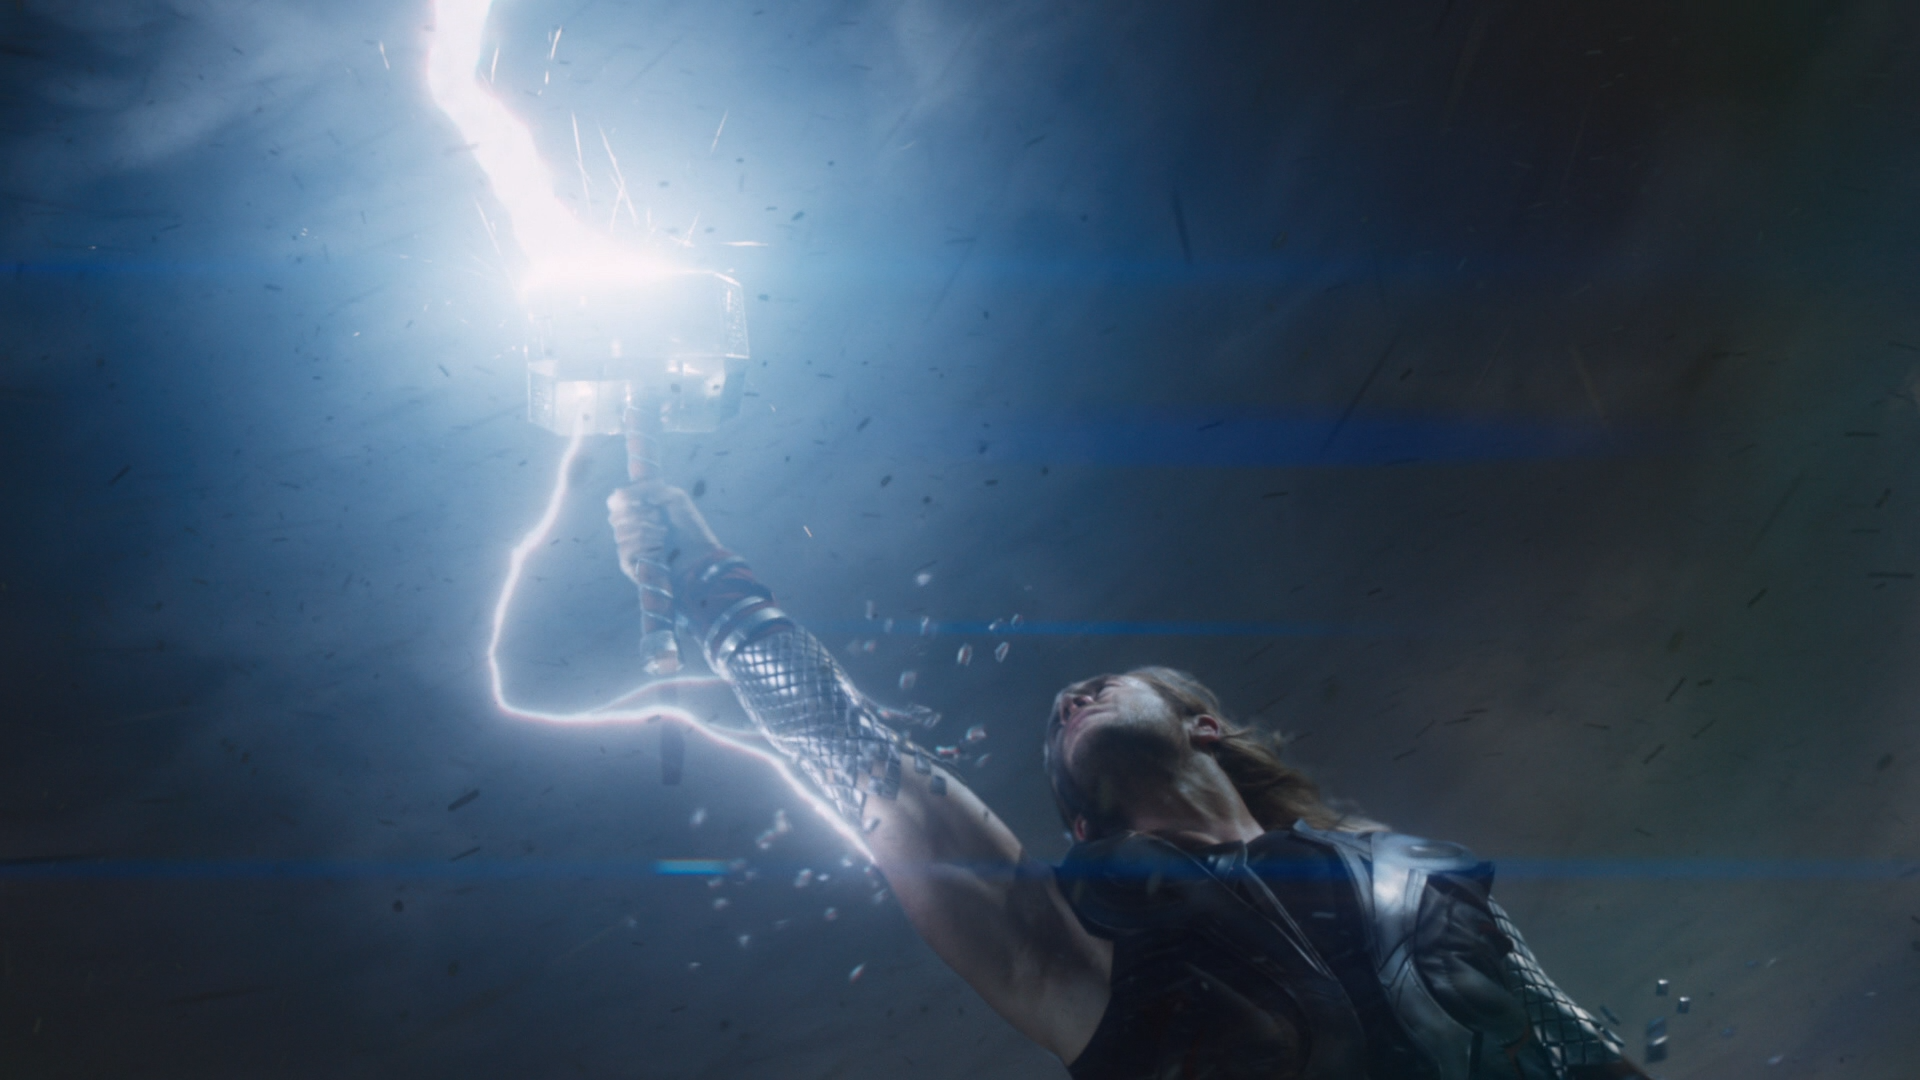 Thor summoning lightning with Mjöllnir.